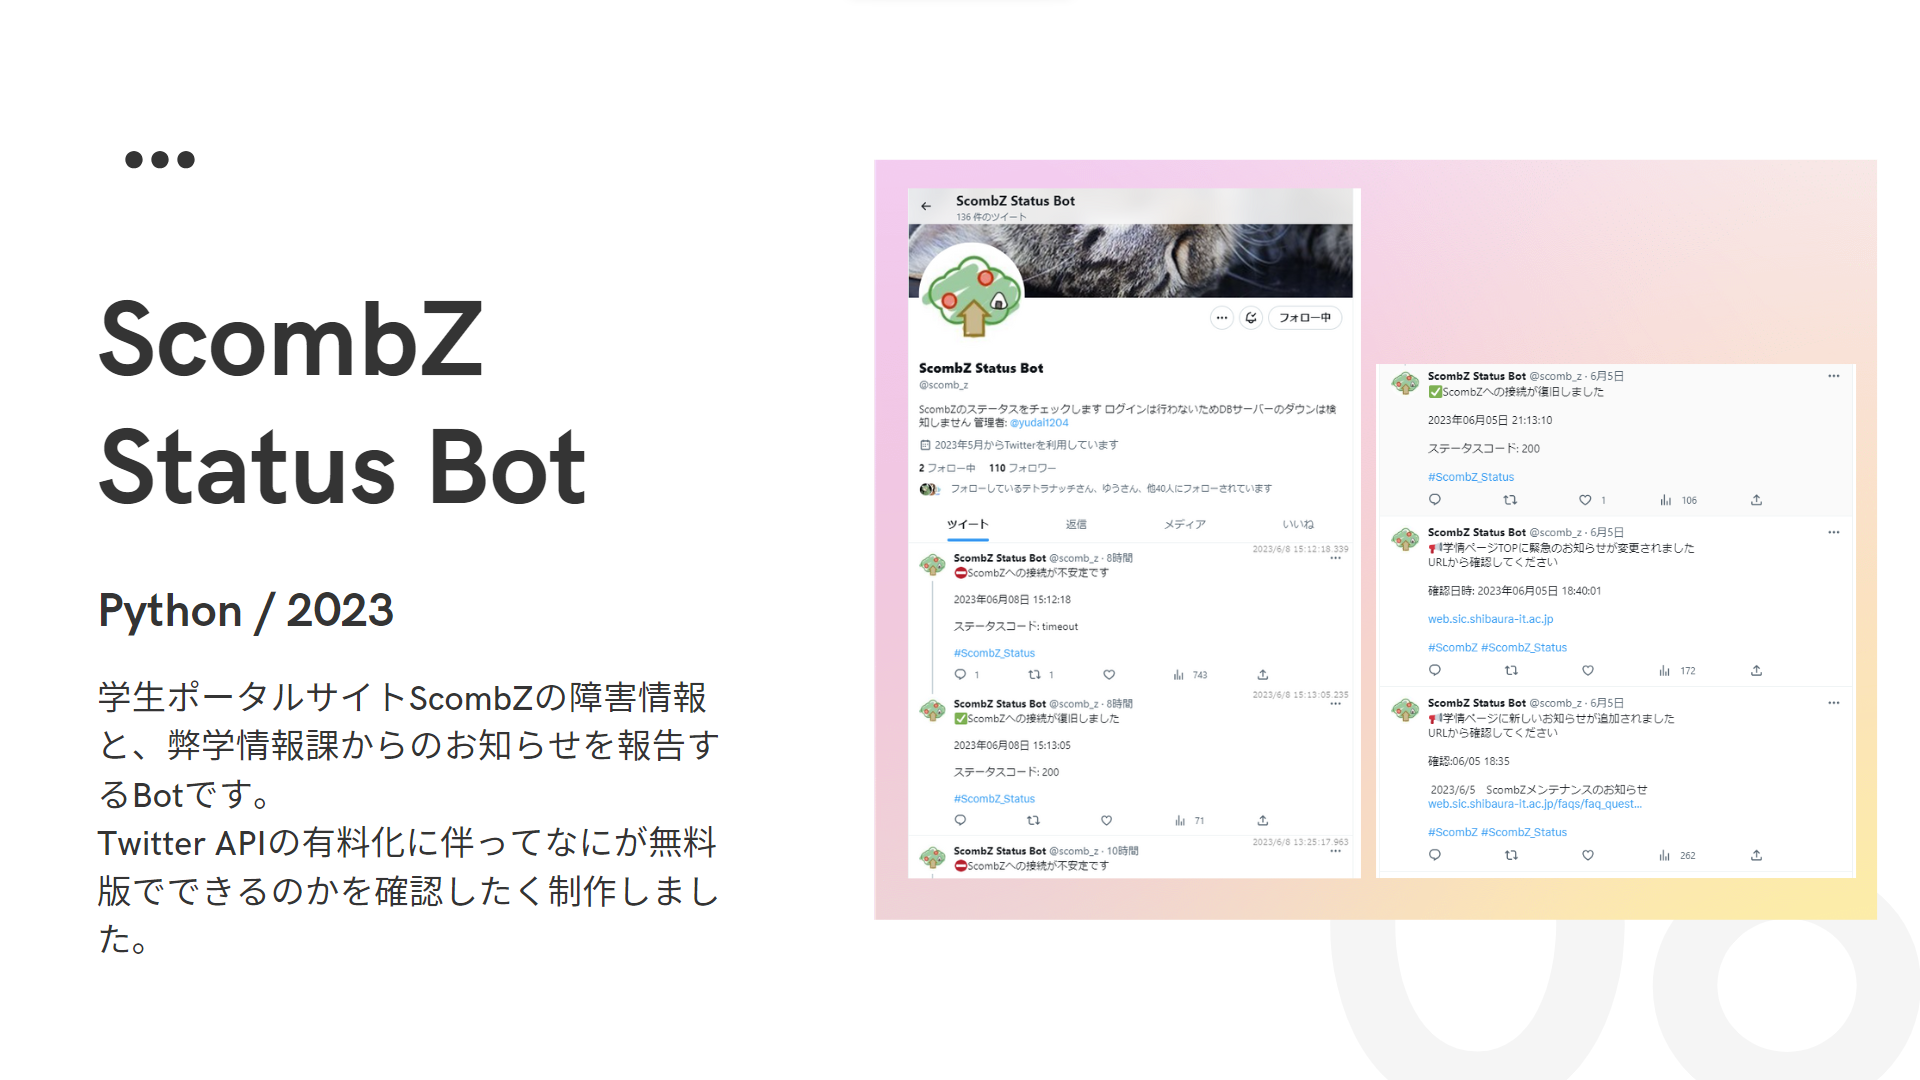 ScombZ Status Bot